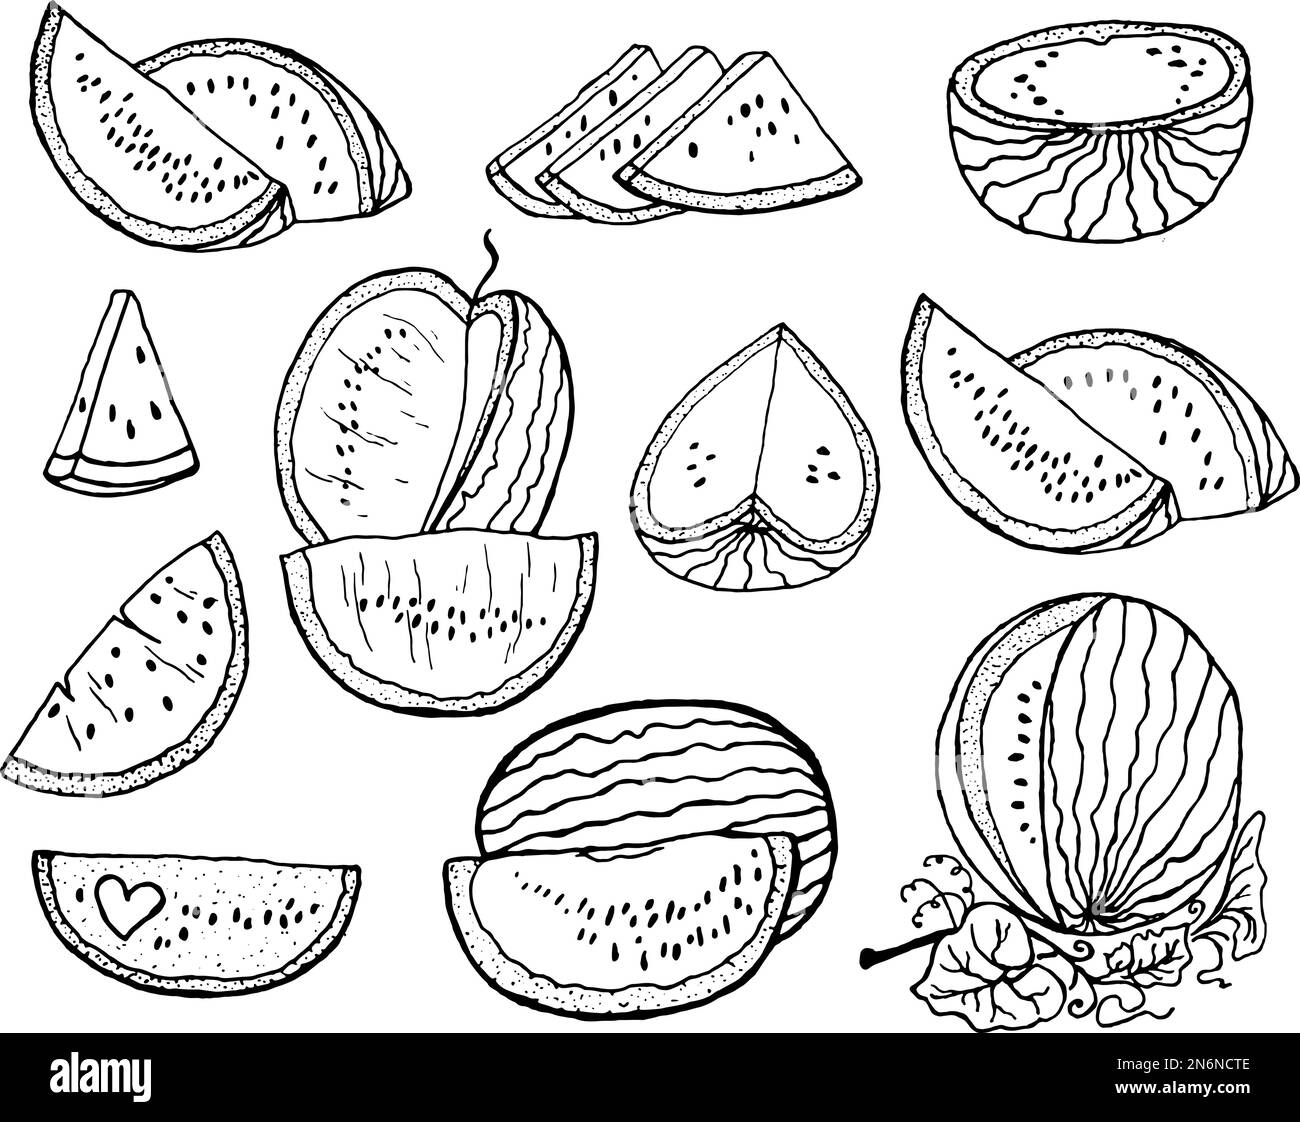 Handgezeichnete Vektordarstellung - Wassermelone und Scheiben Wassermelone Stock Vektor